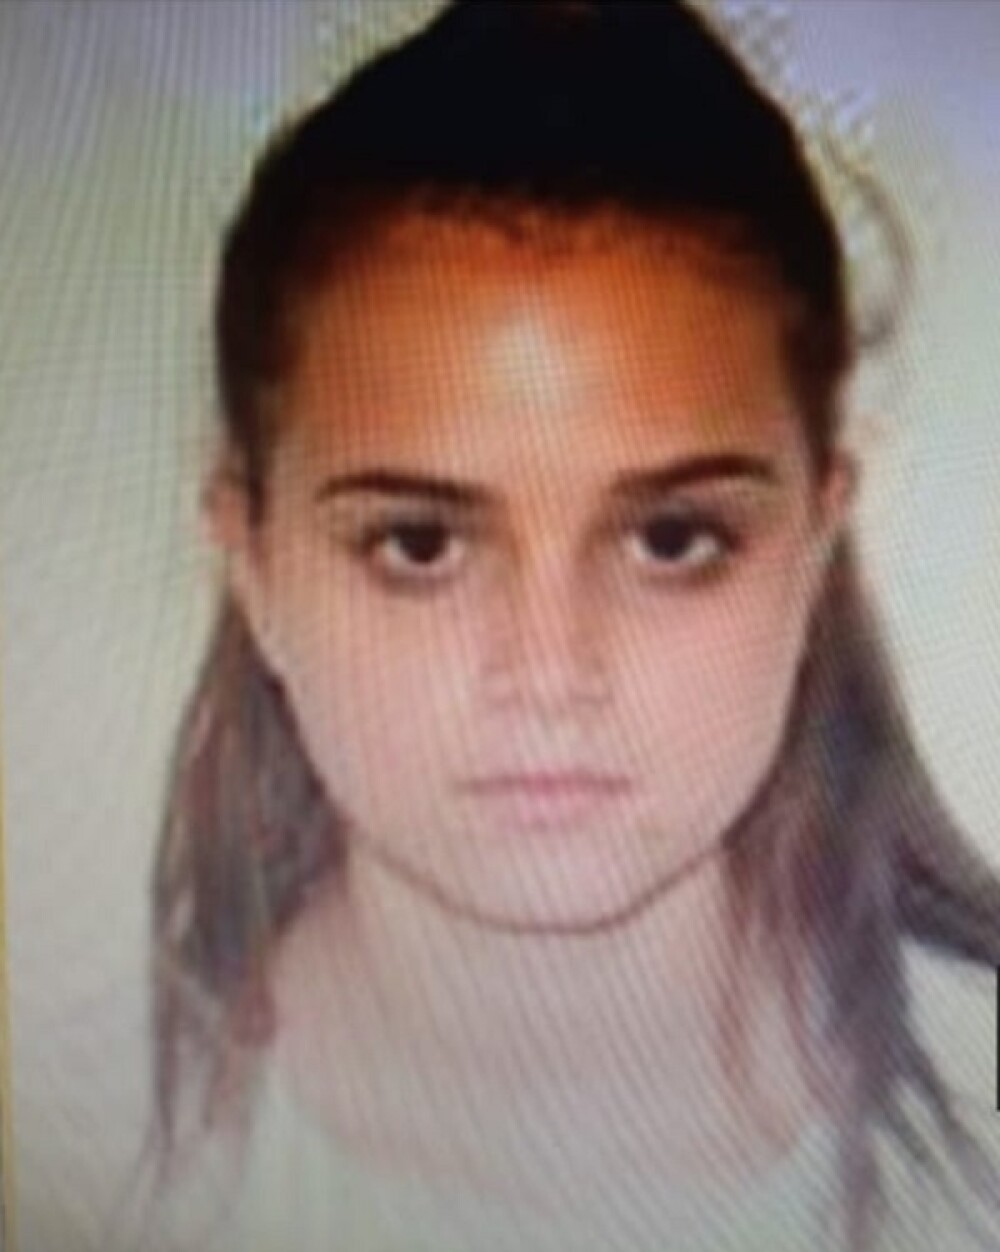 Adolescentă de 16 ani din Satu Mare dată dispărută, după ce a plecat la cumpărături - Imaginea 2